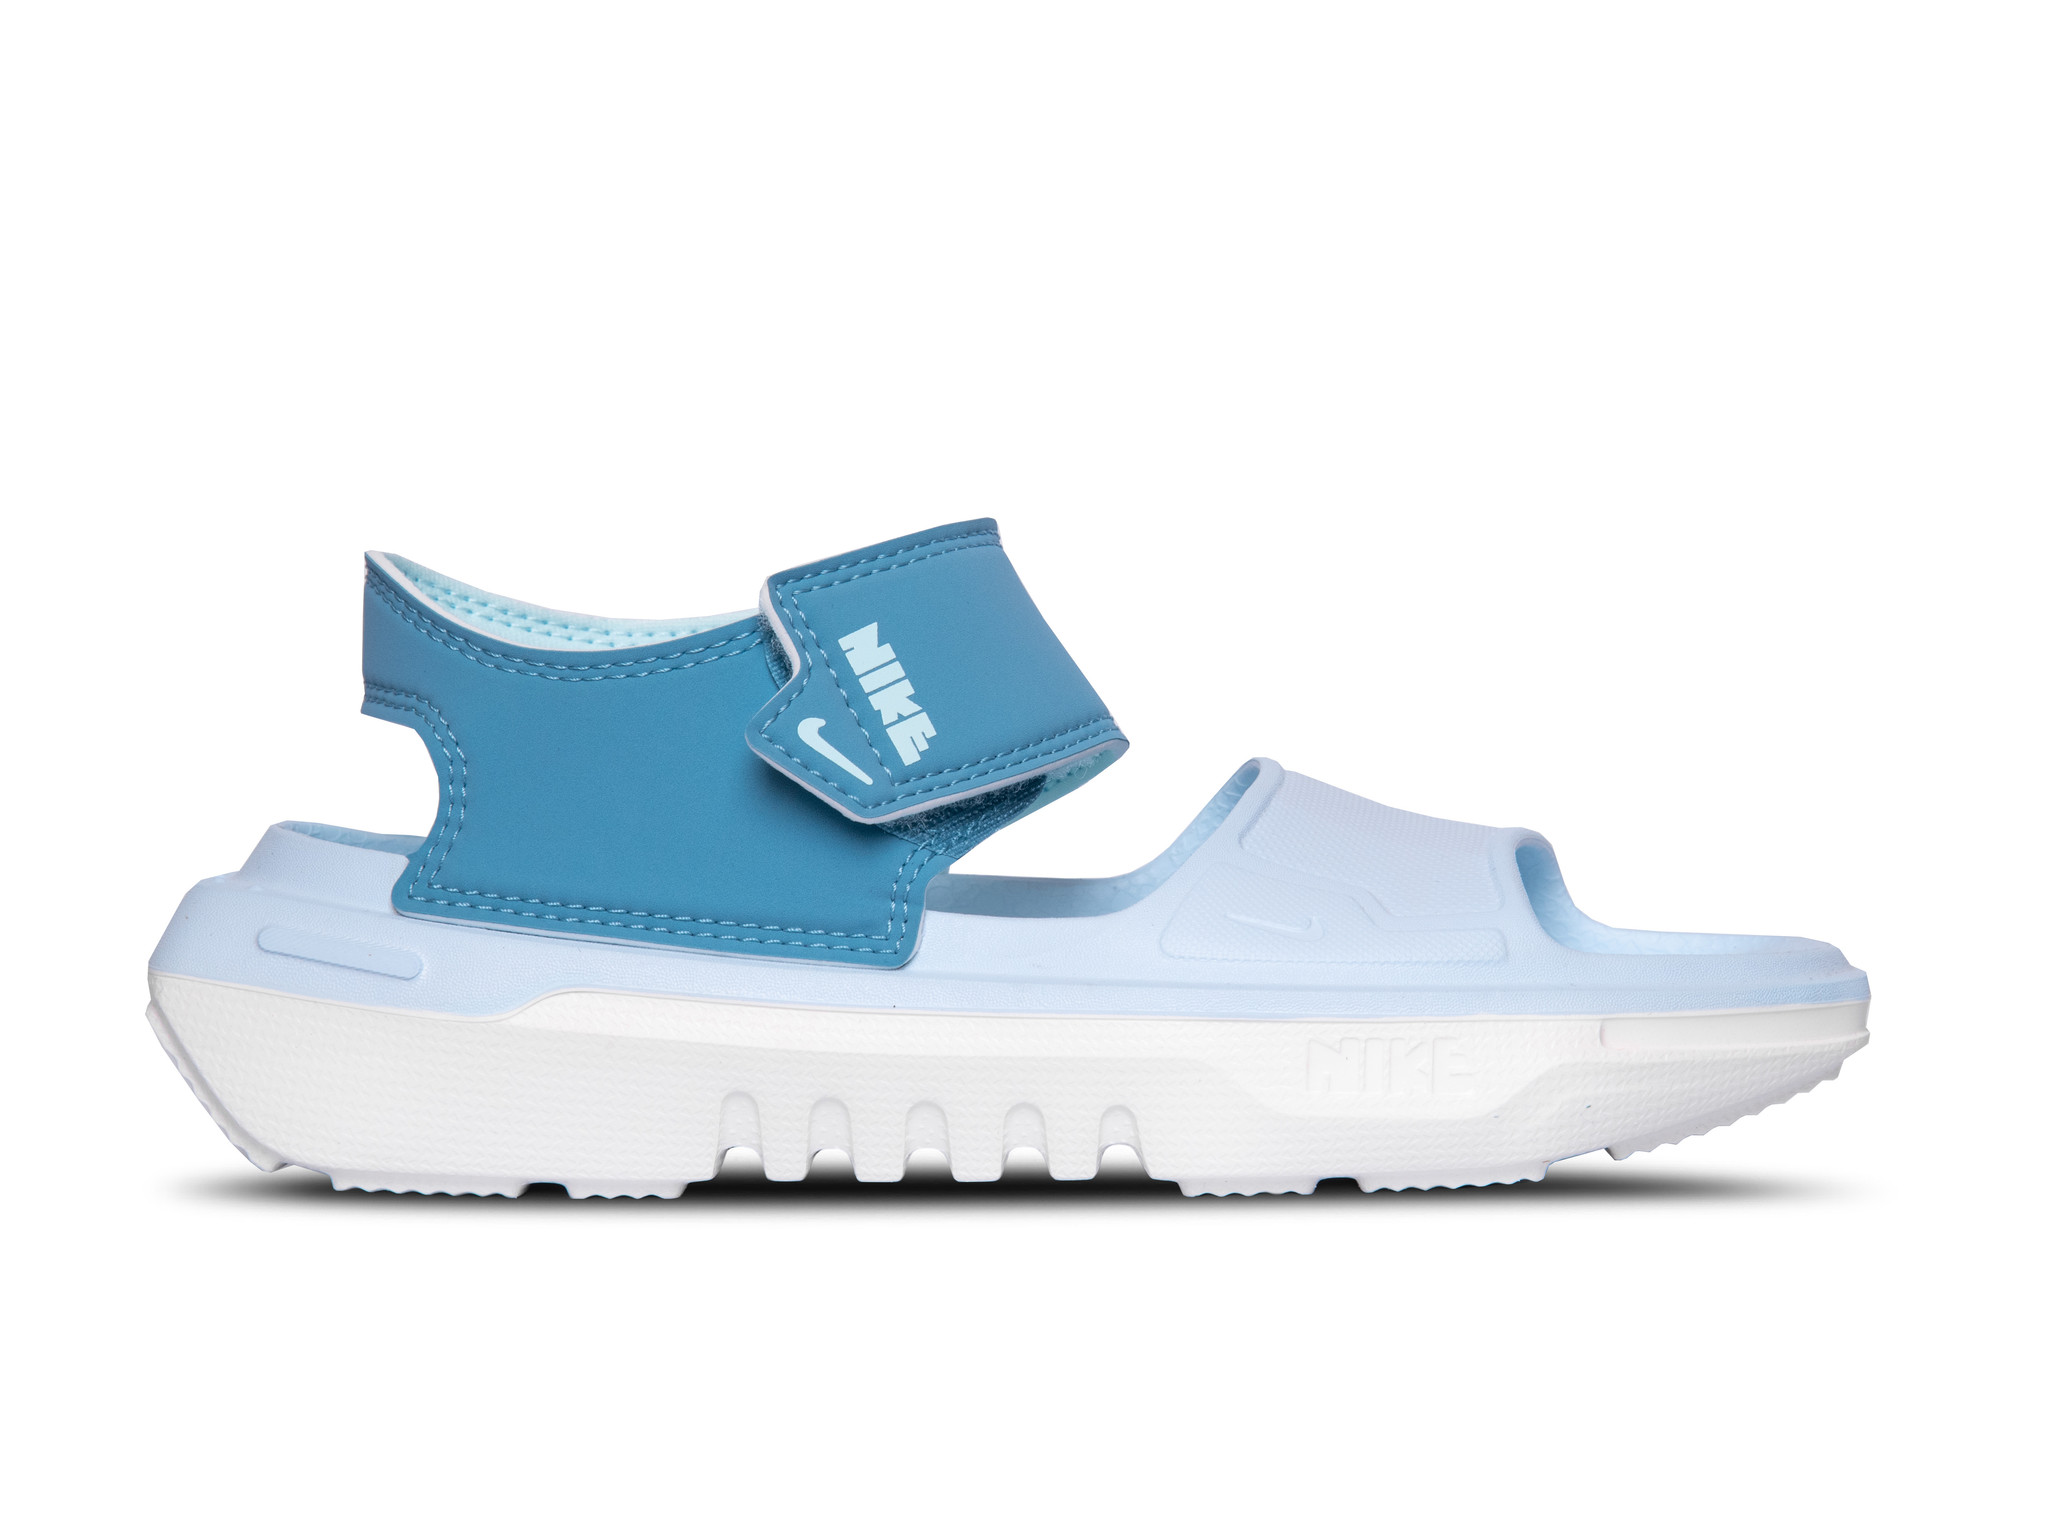 Nike Playscape GS Cerulean Glacier Blue CU5296 400 | Bruut Online Shop ...